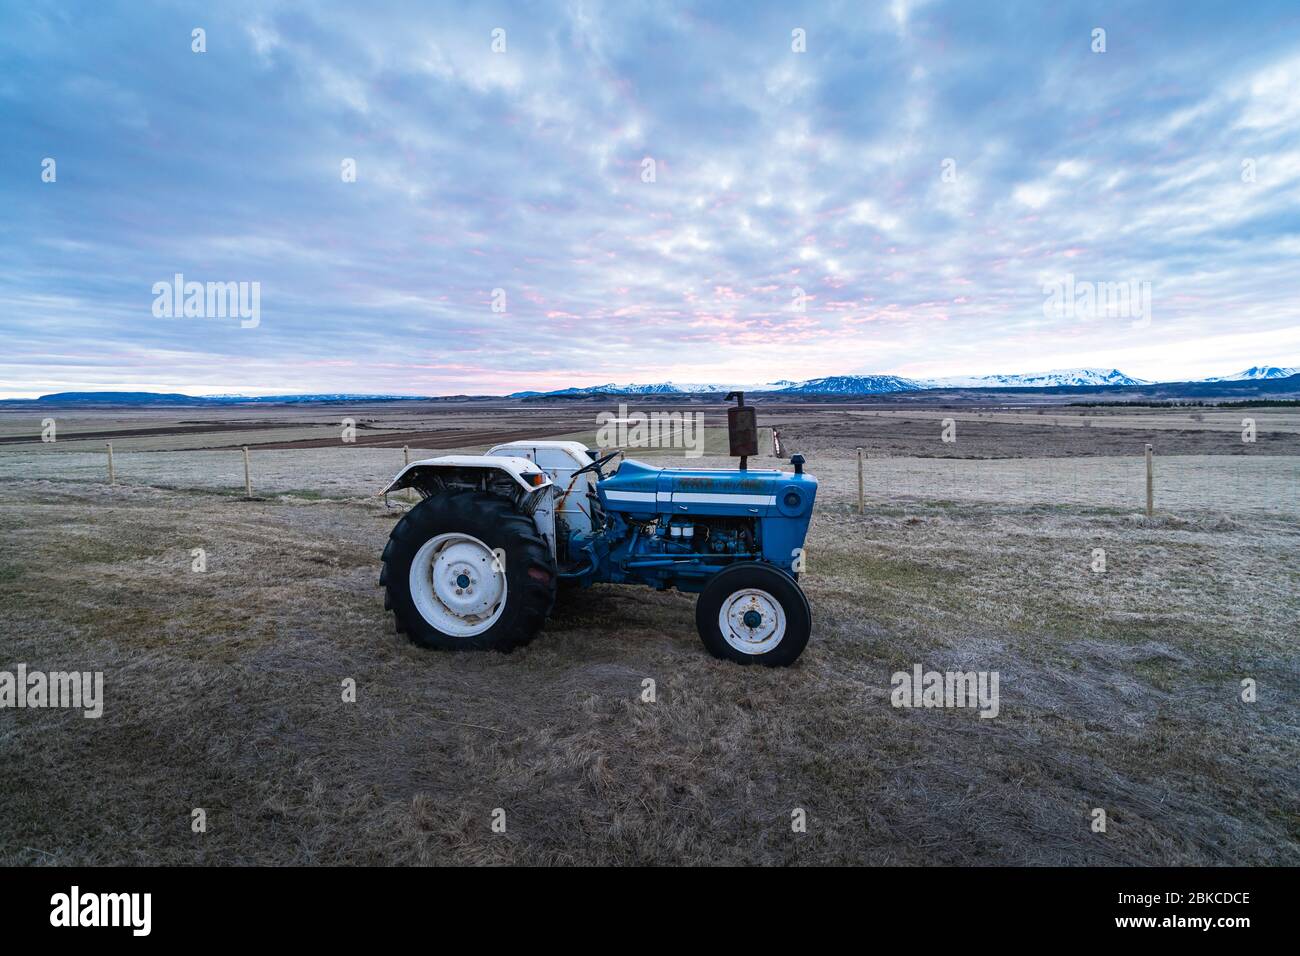 Quadro dello stock agricolo. Un piccolo trattore su un campo durante l'ora del tramonto. Agricoltura in Islanda, Scandinavia. Fotografia di sfondo di un trattore Foto Stock